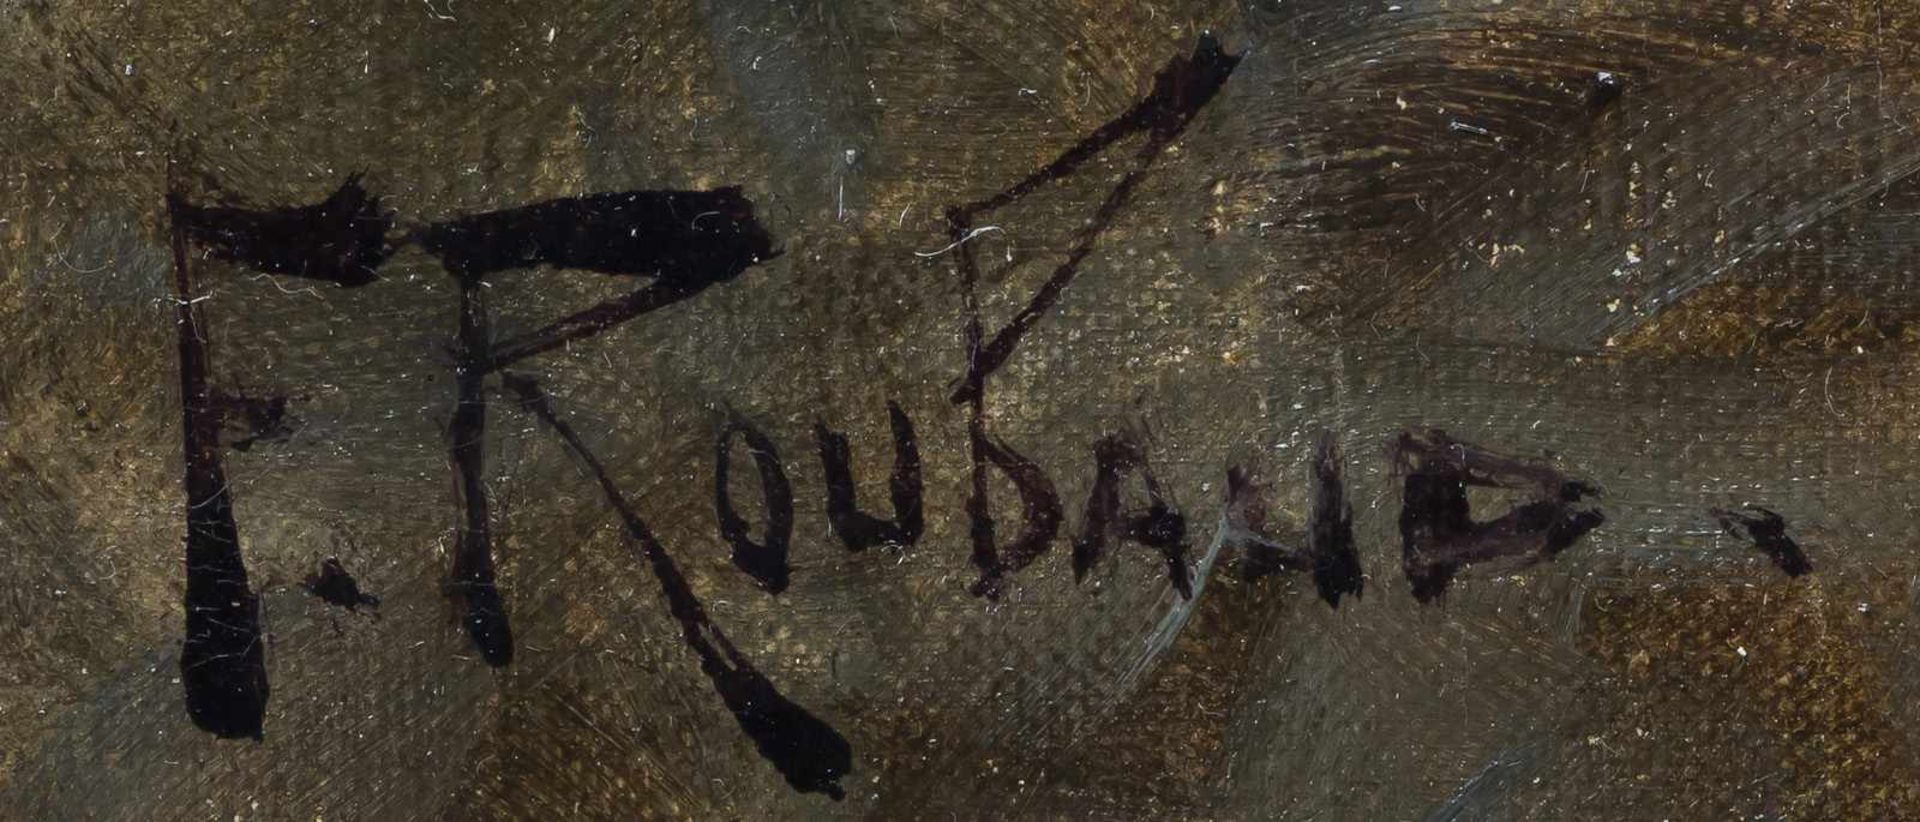 Roubaud, FranzOdessa 1856 - München 192883 x 60 cmKosaken beim Frauenraub. Öl/Lwd., unten rechts - Bild 2 aus 2